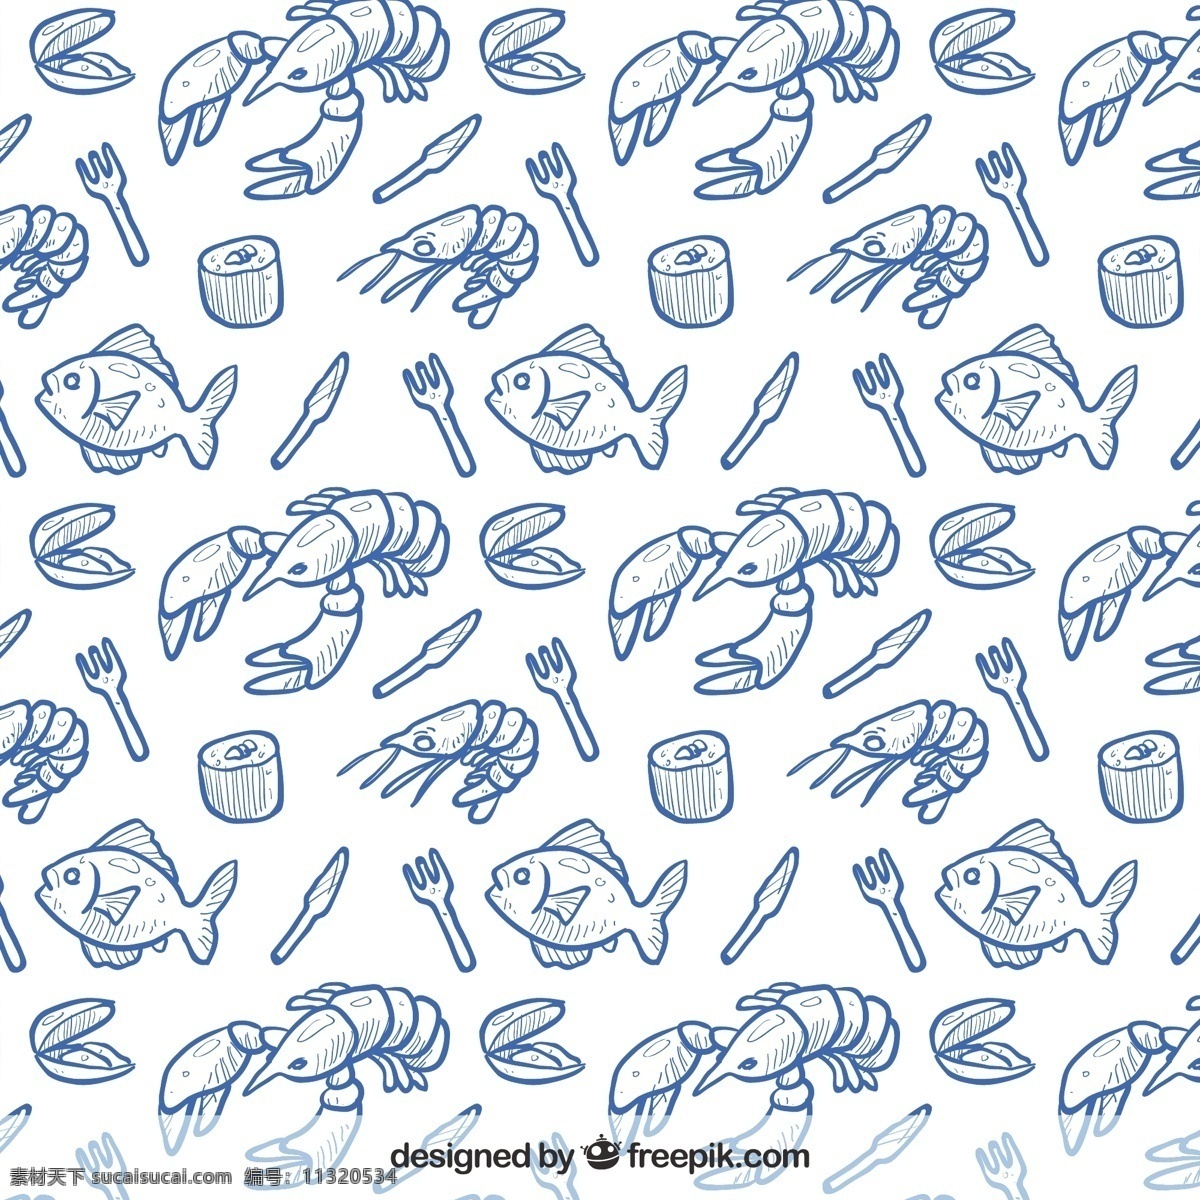 手绘海鲜背景 图案 食品 餐厅 绘制 寿司 绘画 海鲜 无缝 模式 手工 手绘 海洋生物